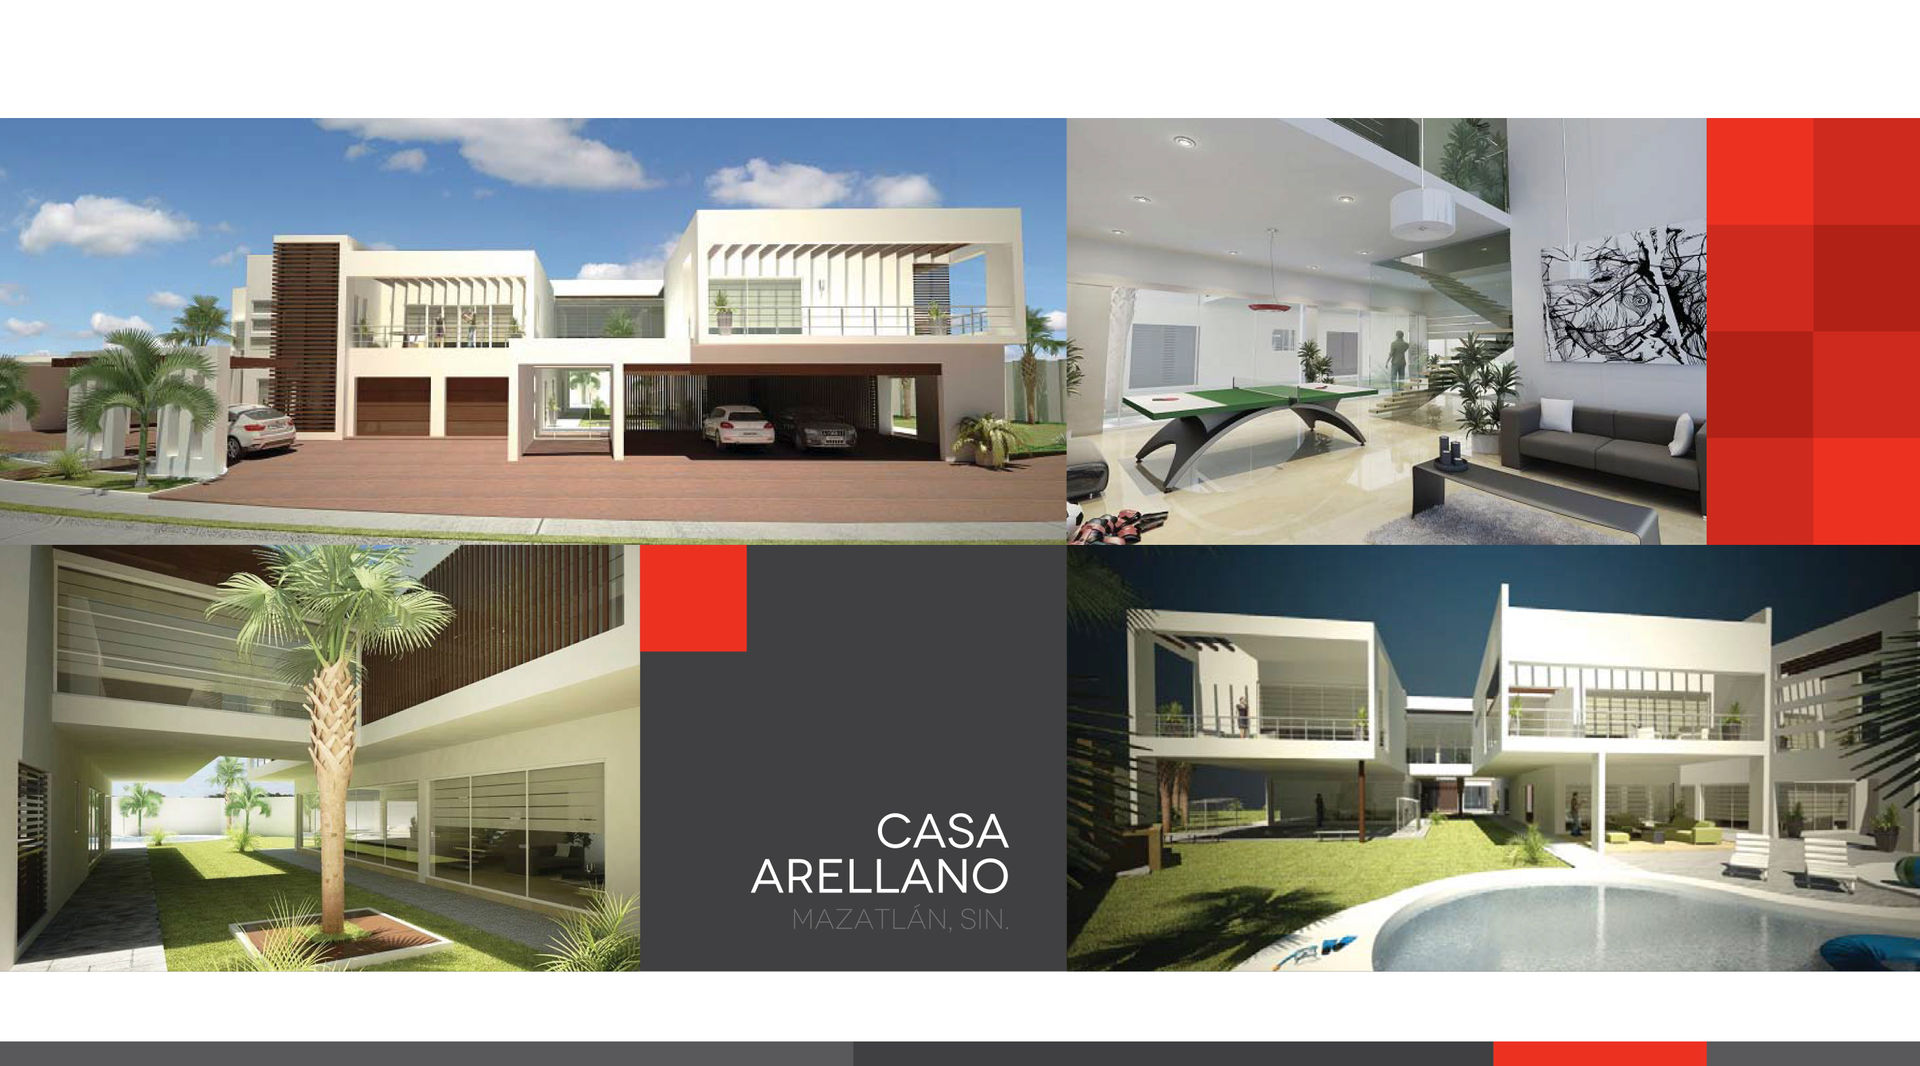 Casa Arellano homify Casas modernas Concreto residencia